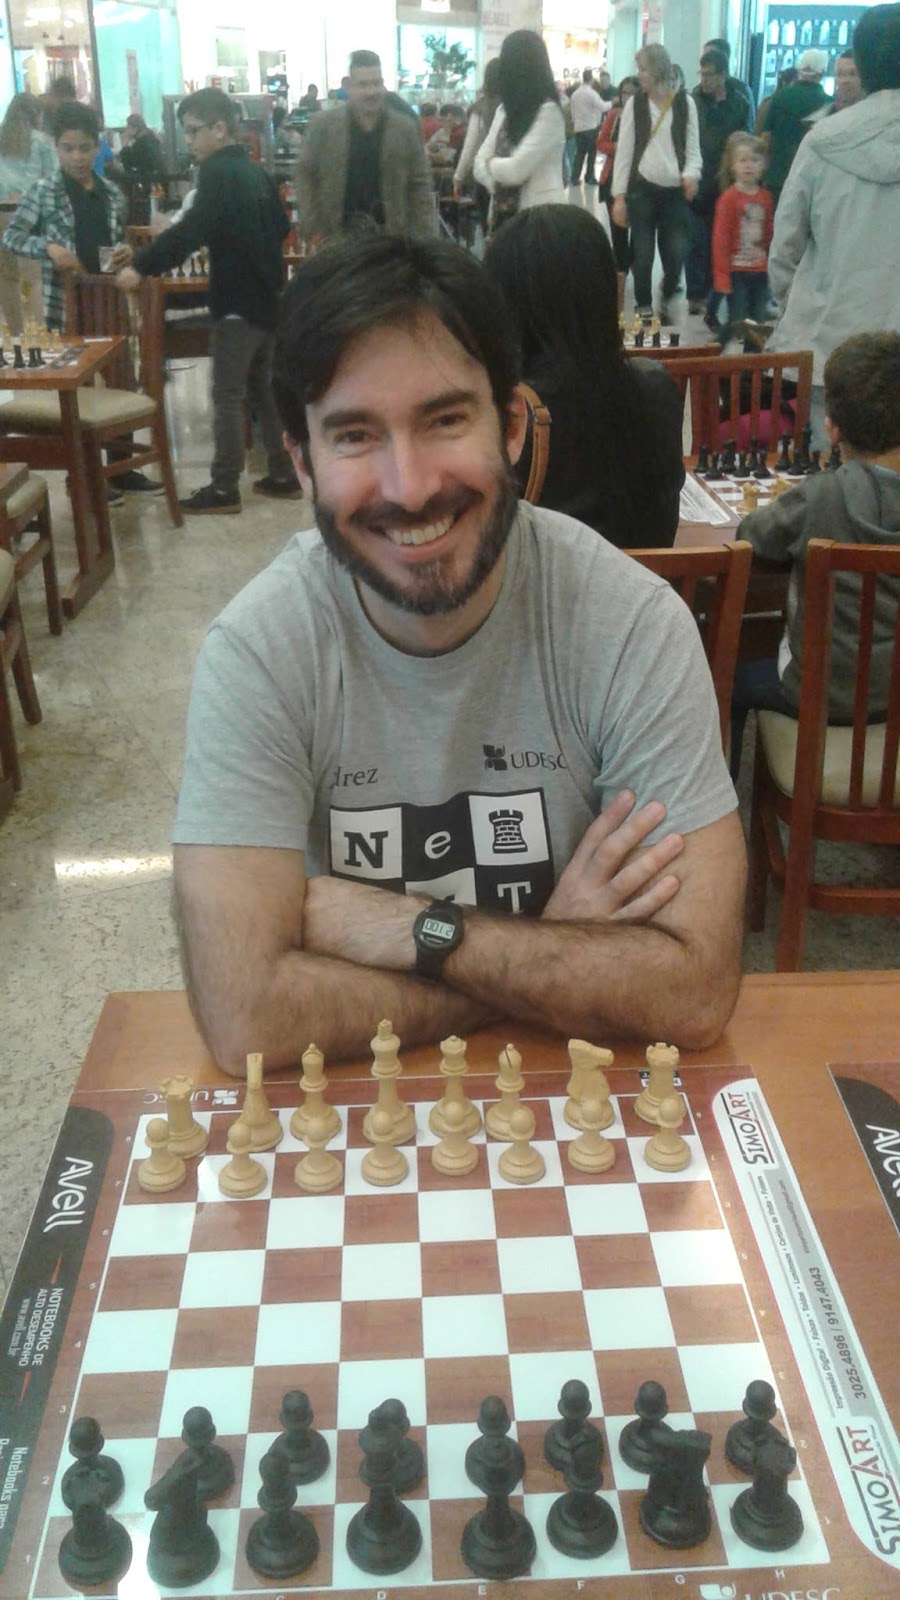 Xadrez960 (Fischer Random) - Variantes de Xadrez 